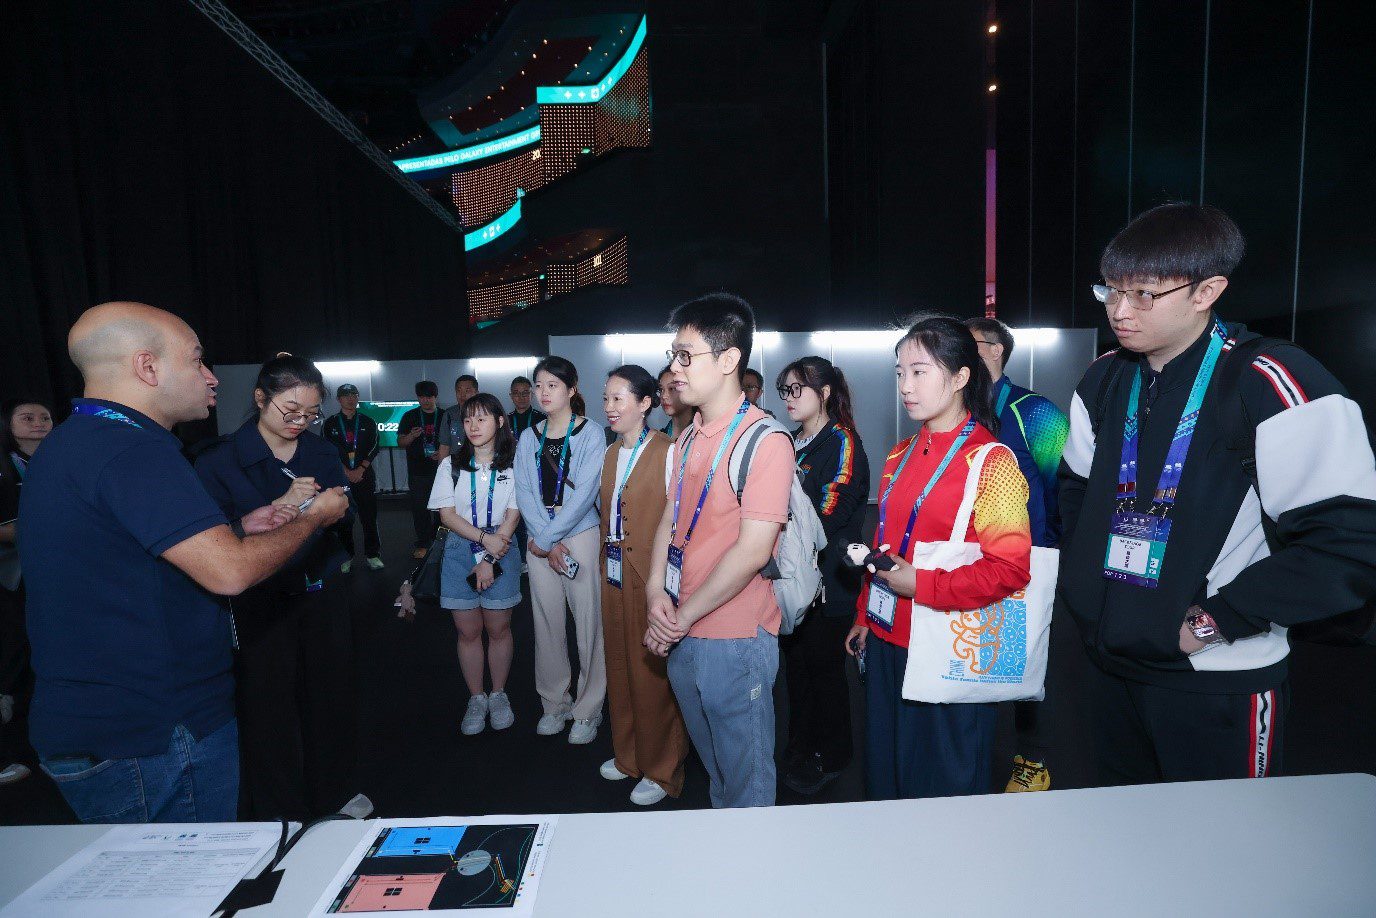 銀娛邀請澳門旅遊大學學生參與「幕後之旅」活動，認識大型體育賽事背後各個工作區域的設置及功能。